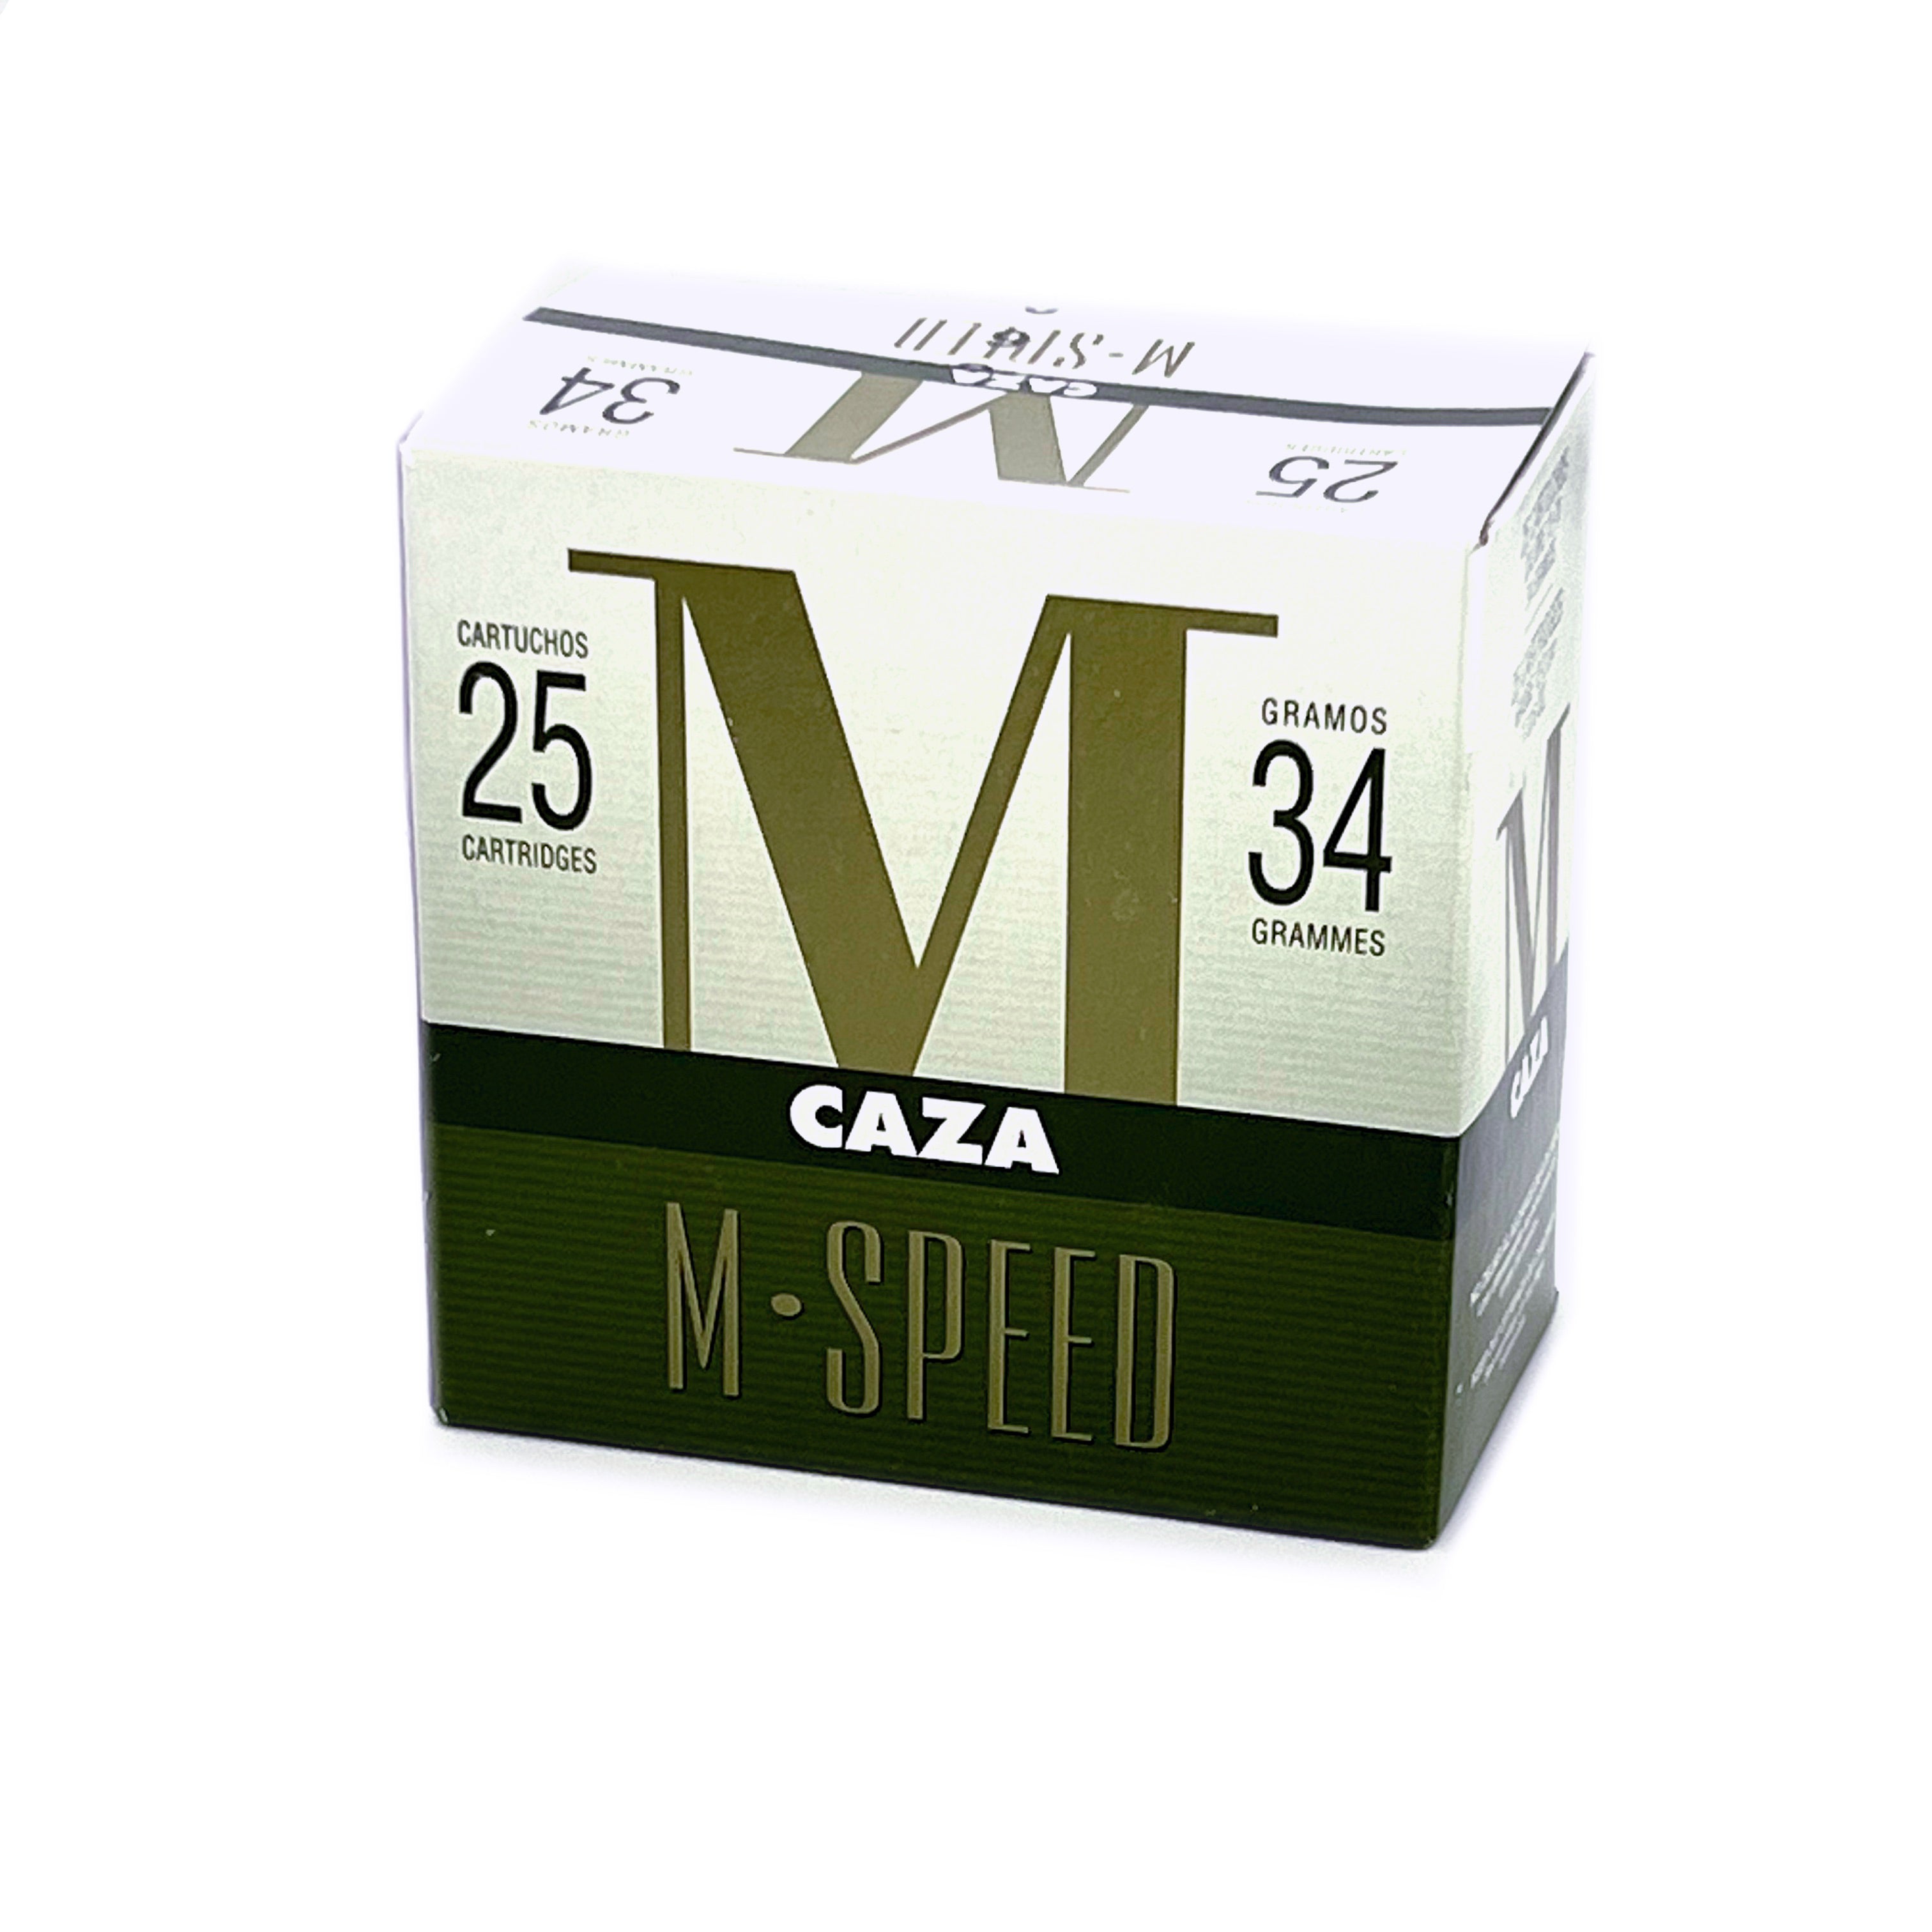 Cartuchos de Caza Maionchi M-Speed